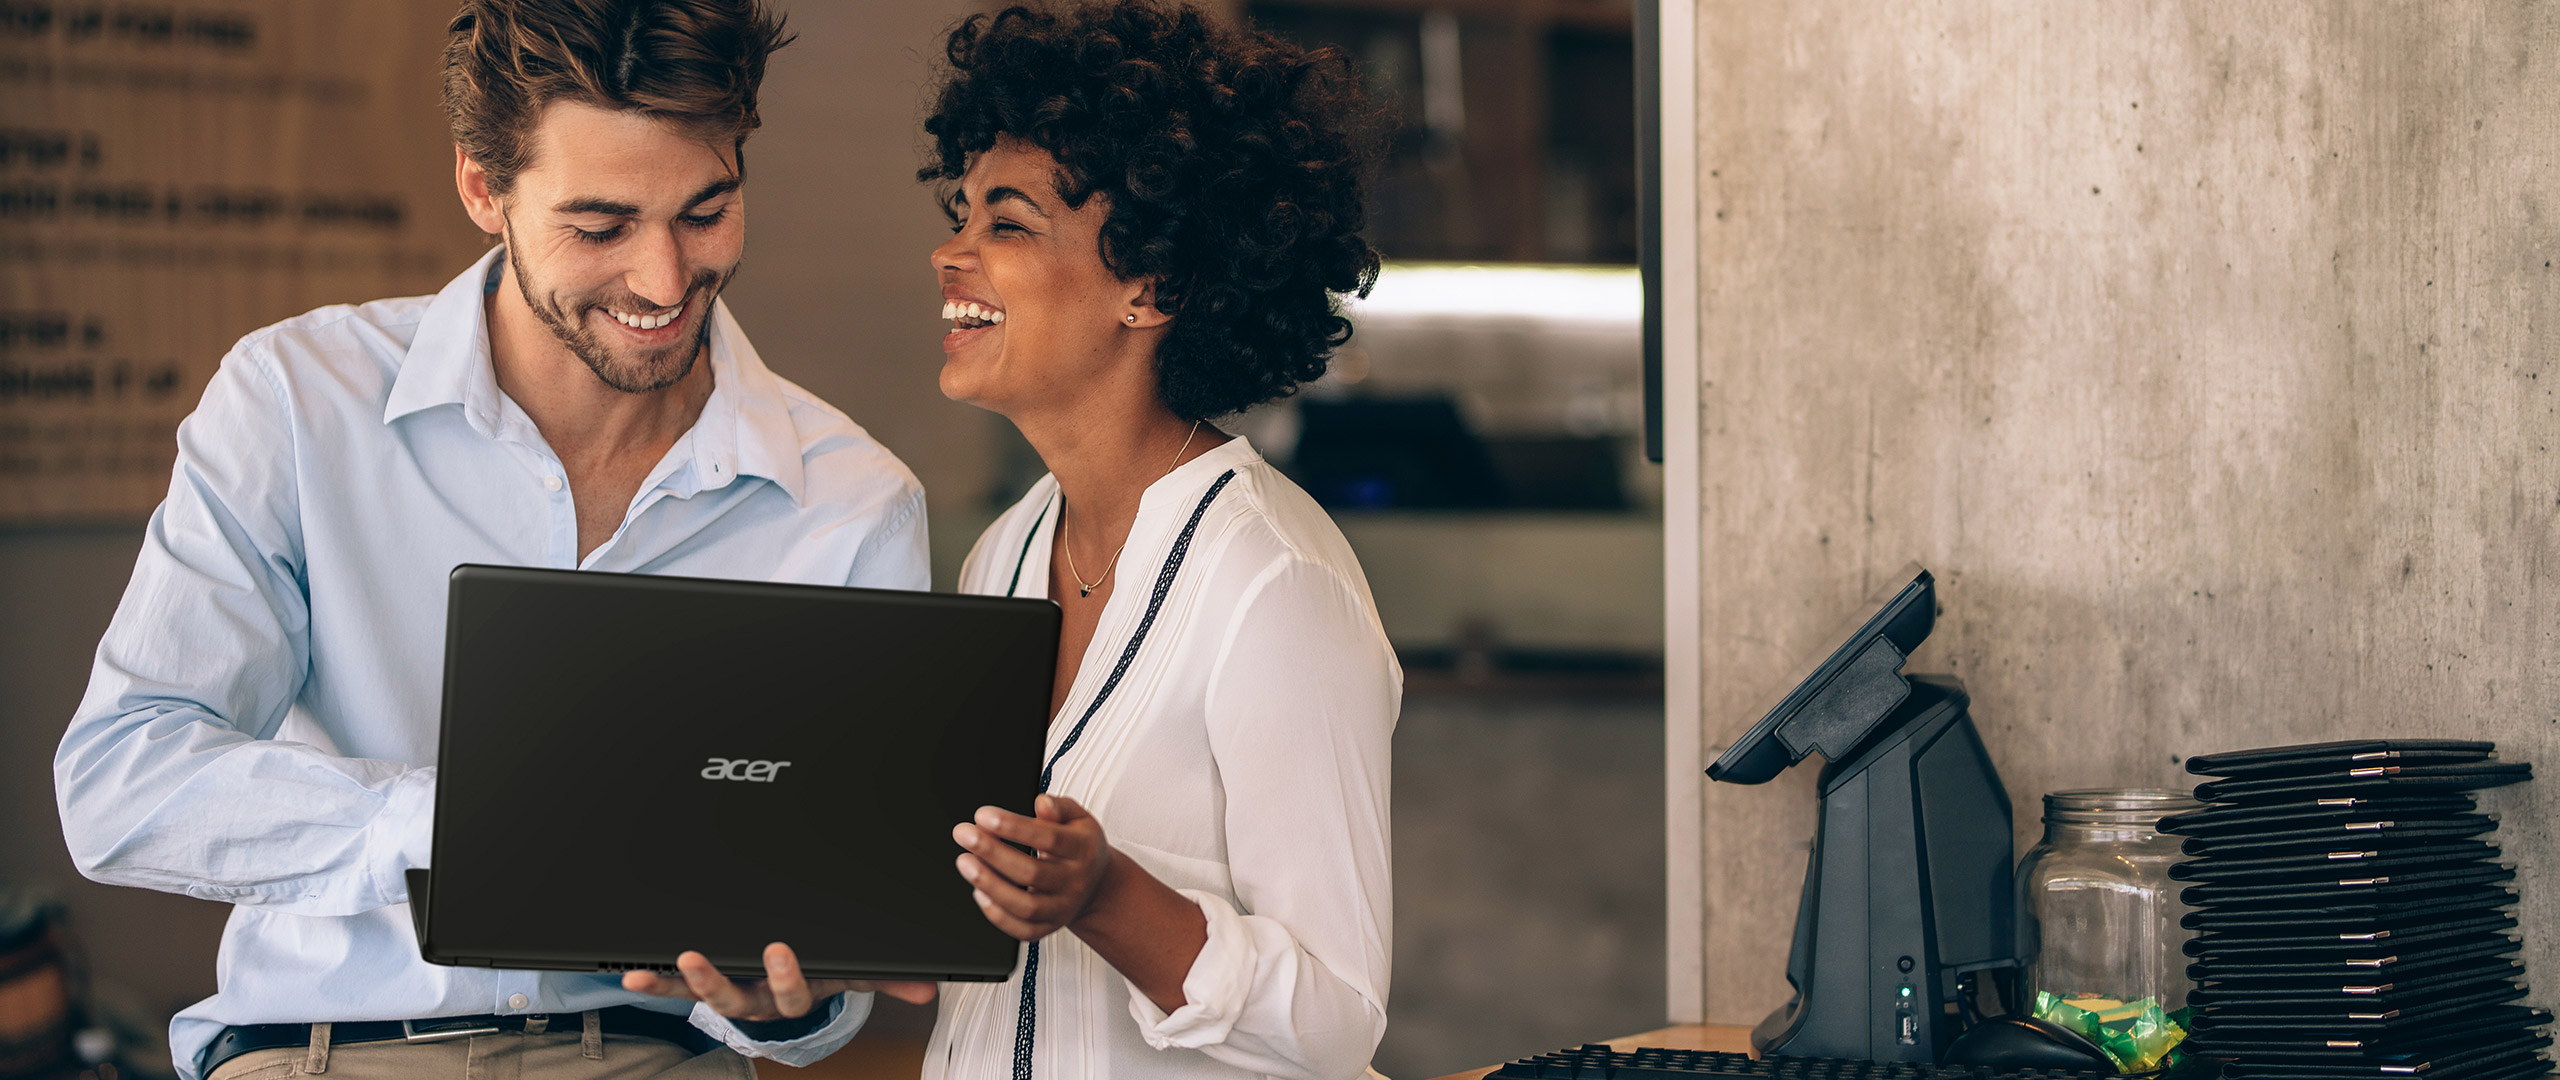 Acer Extensa 15 est le PC portable ultime pour les professionnels et les étudiants. Avec sa conception ergonomique et ses performances de pointe, il garantit une productivité optimale où que vous soyez